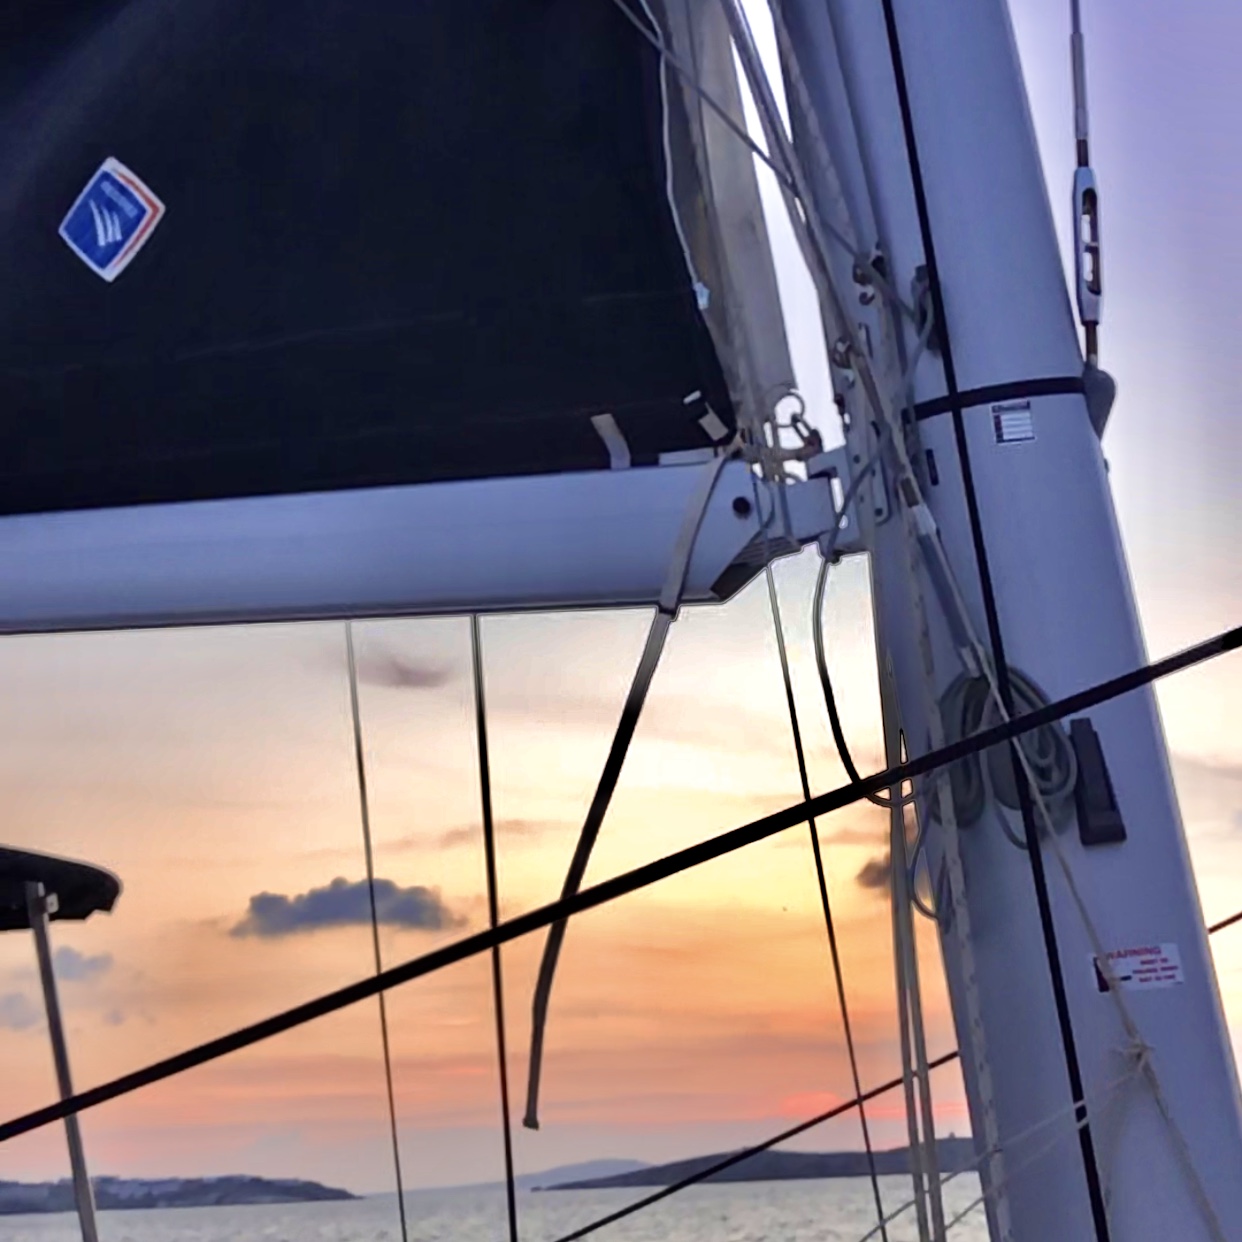 Evening sailing with catamaran